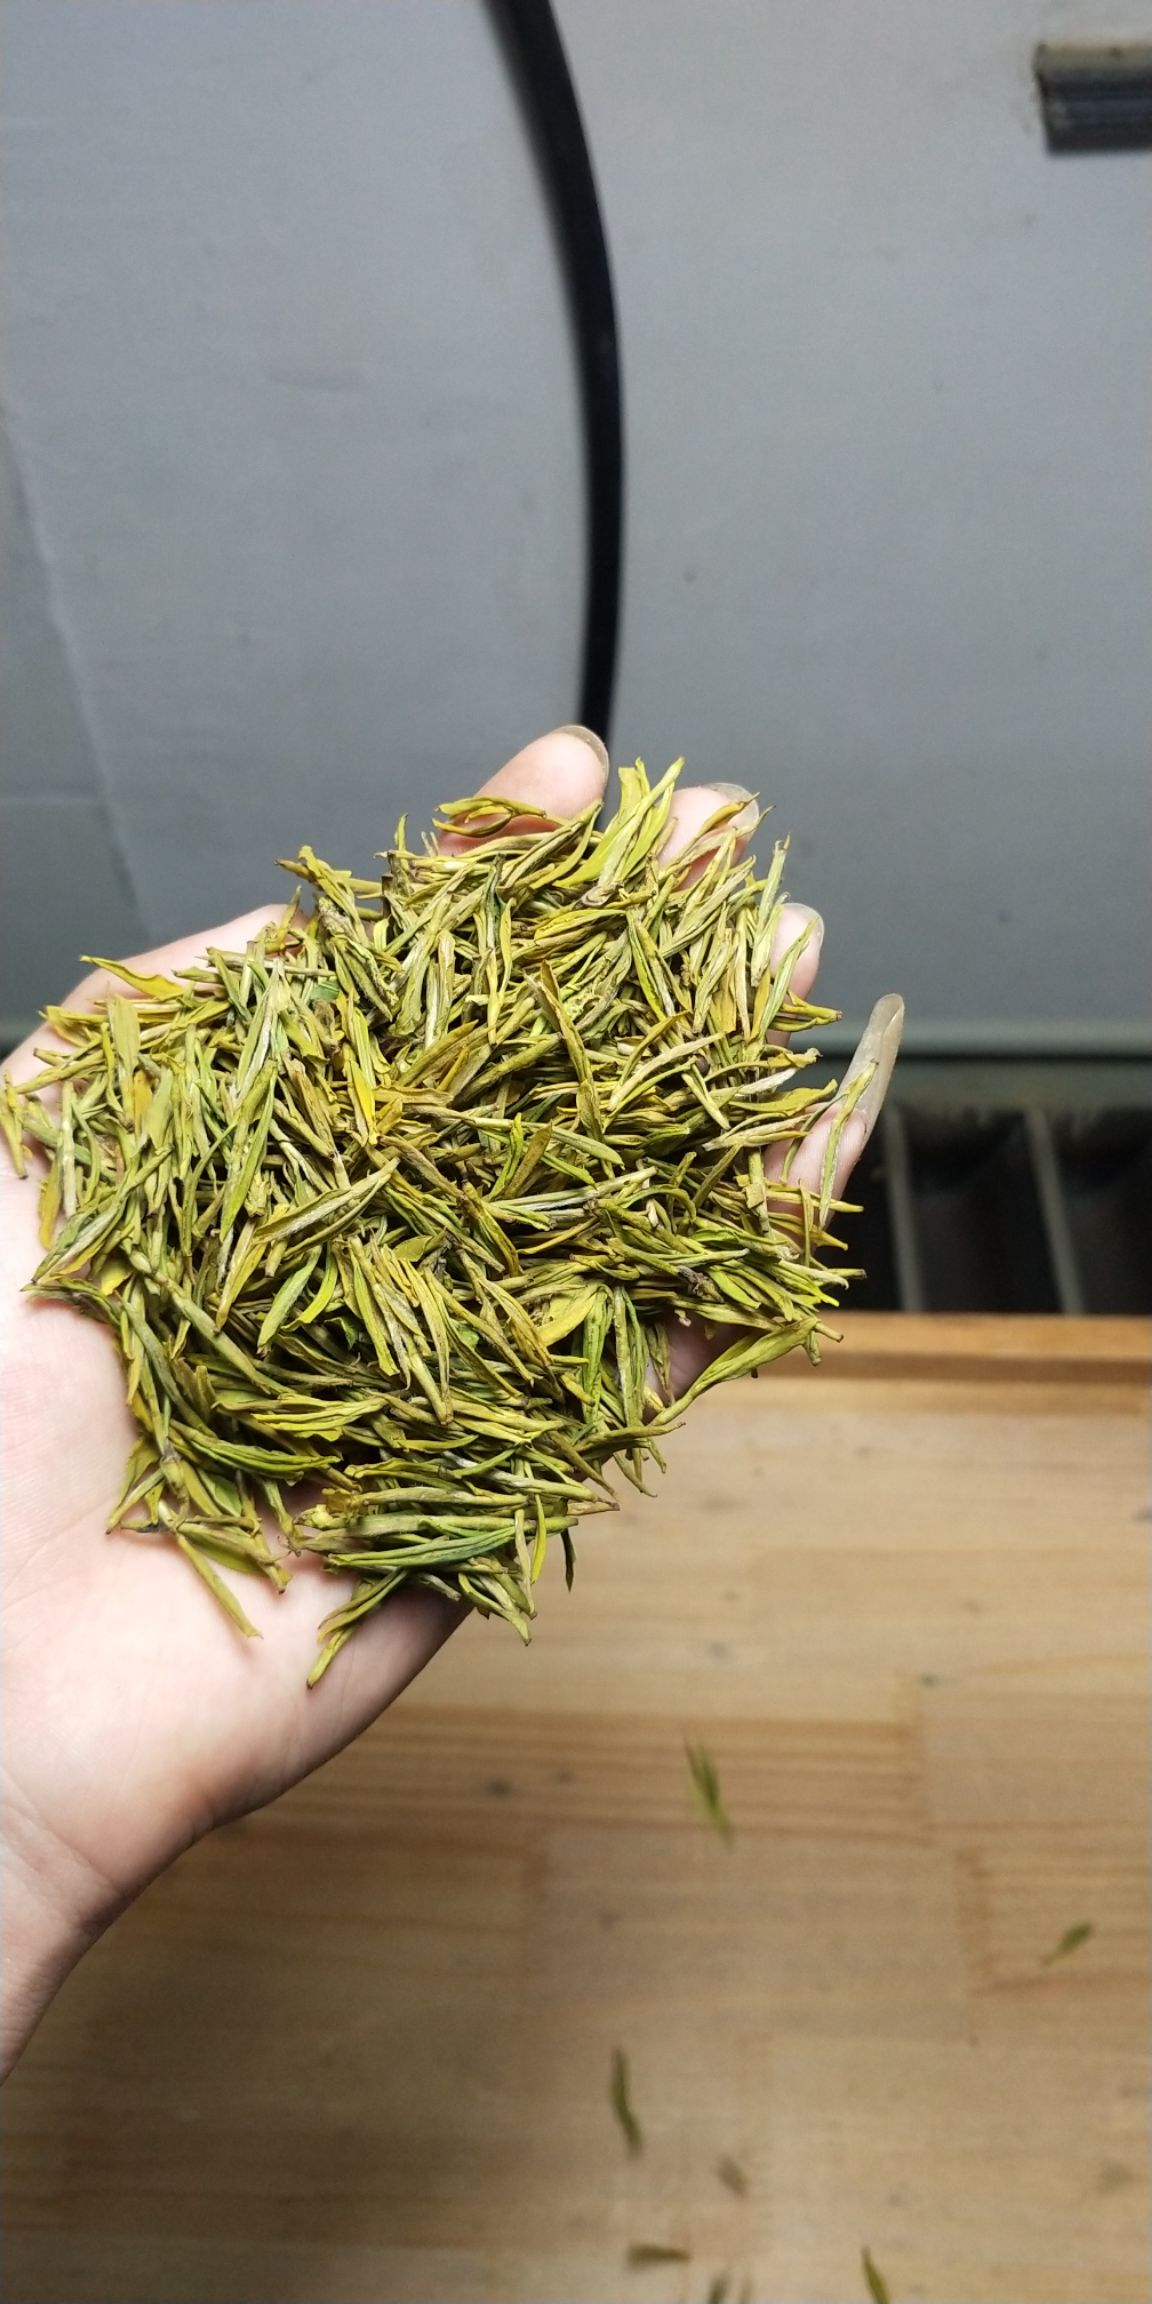 [黄金茶批发]黄金茶 春茶黄金芽价格980元/斤 - 惠农网